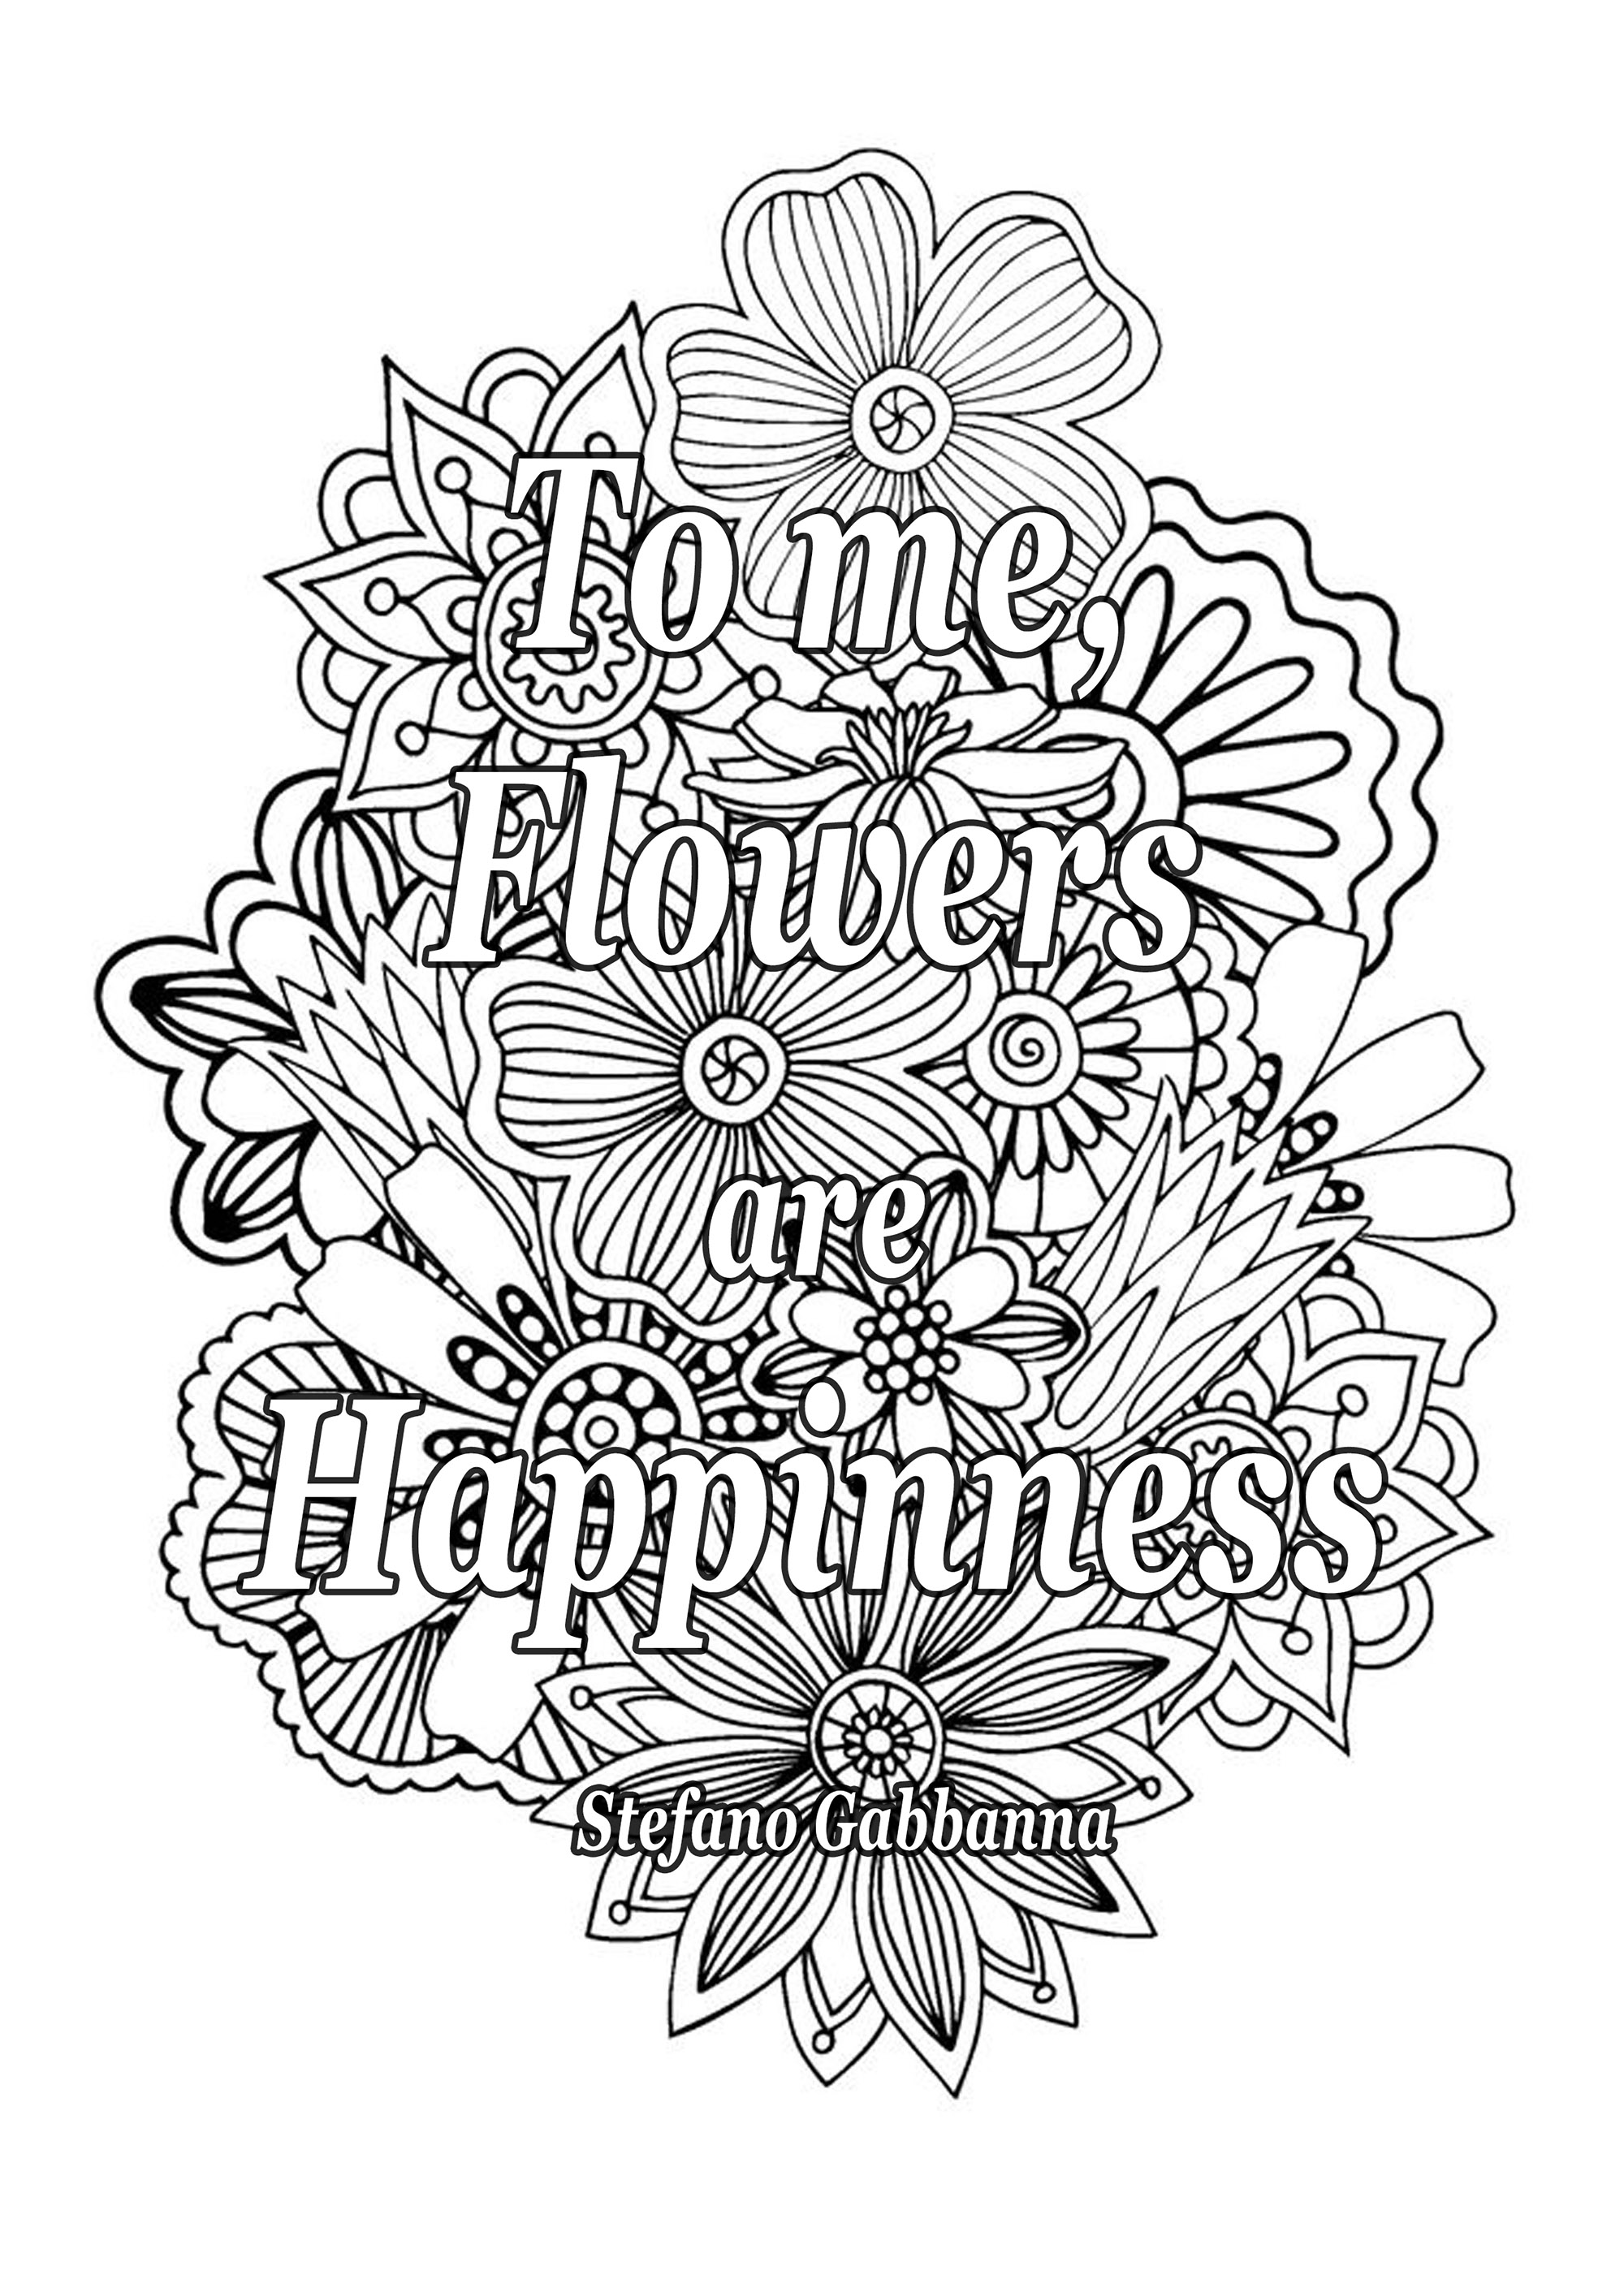 Für mich sind Blumen Glück. Zitat von Stefano Gabbanna